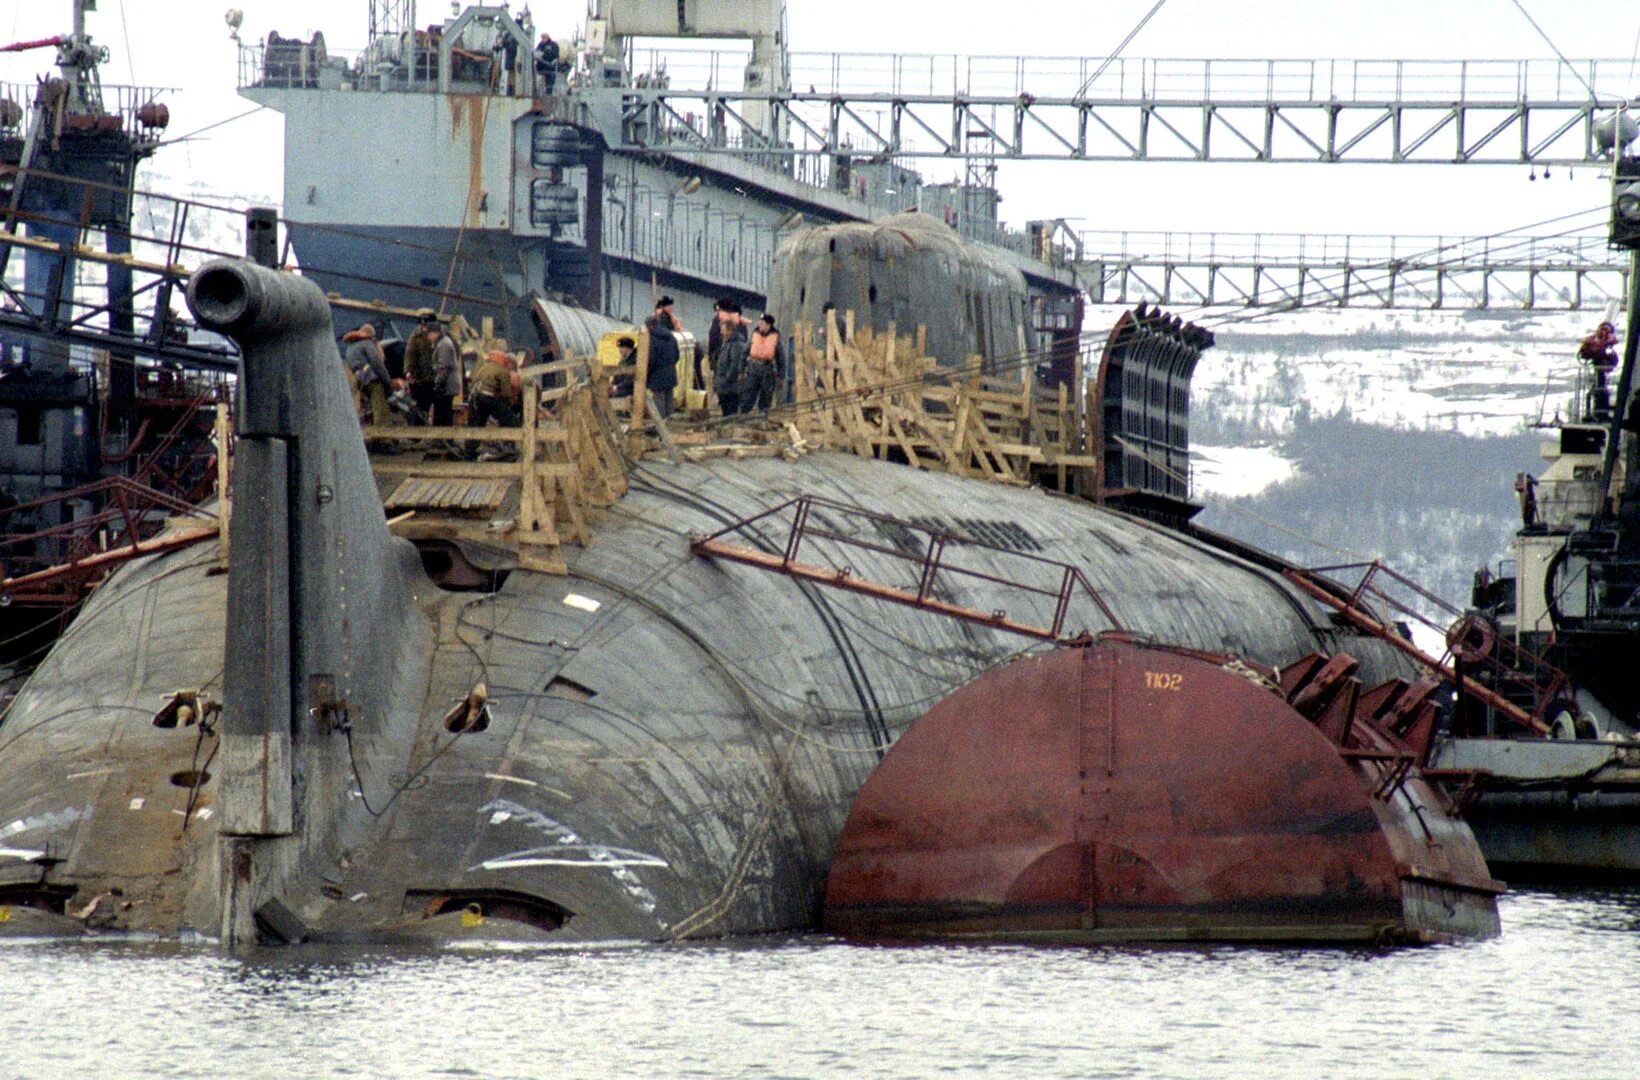 Kursk sp. Курск атомная подводная лодка гибель. Гибель АПЛ Курск. Подводная лодка к-141 «Курск». 12 Августа 2000 затонула подводная лодка Курск.